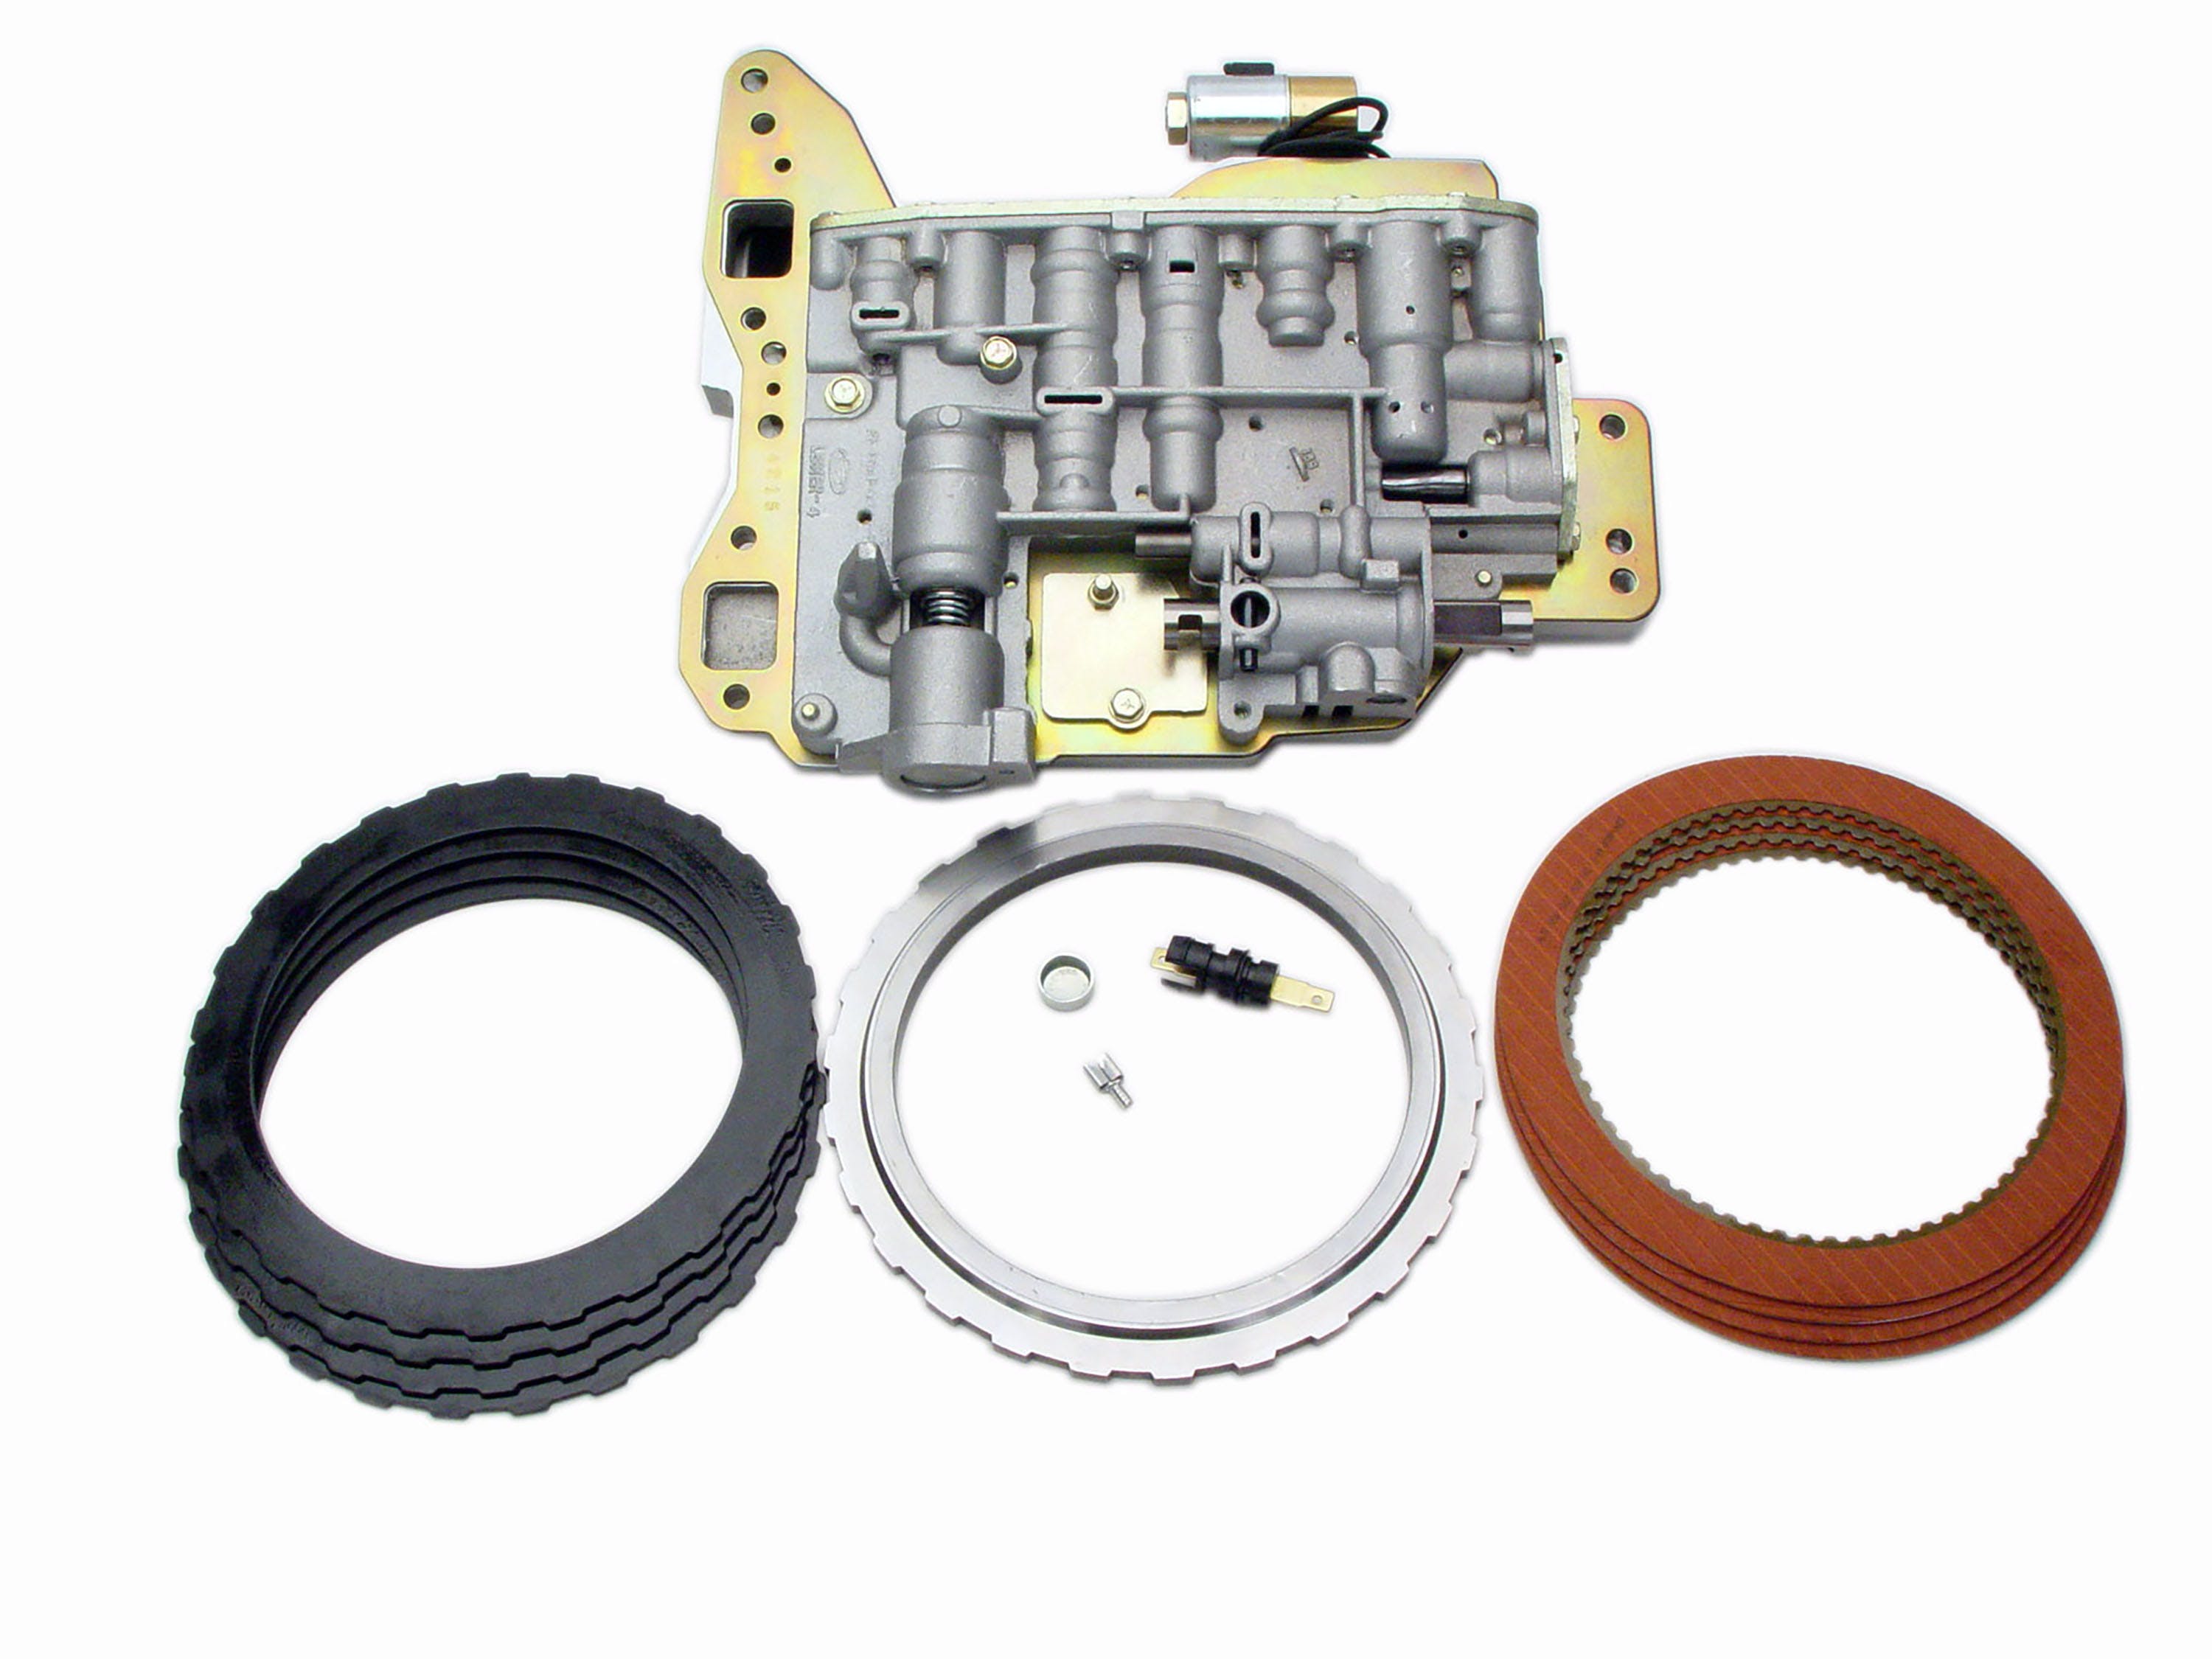 TCI Automotive 421500 C6 Transbrake Kit for 69-91 Click-Style Detent